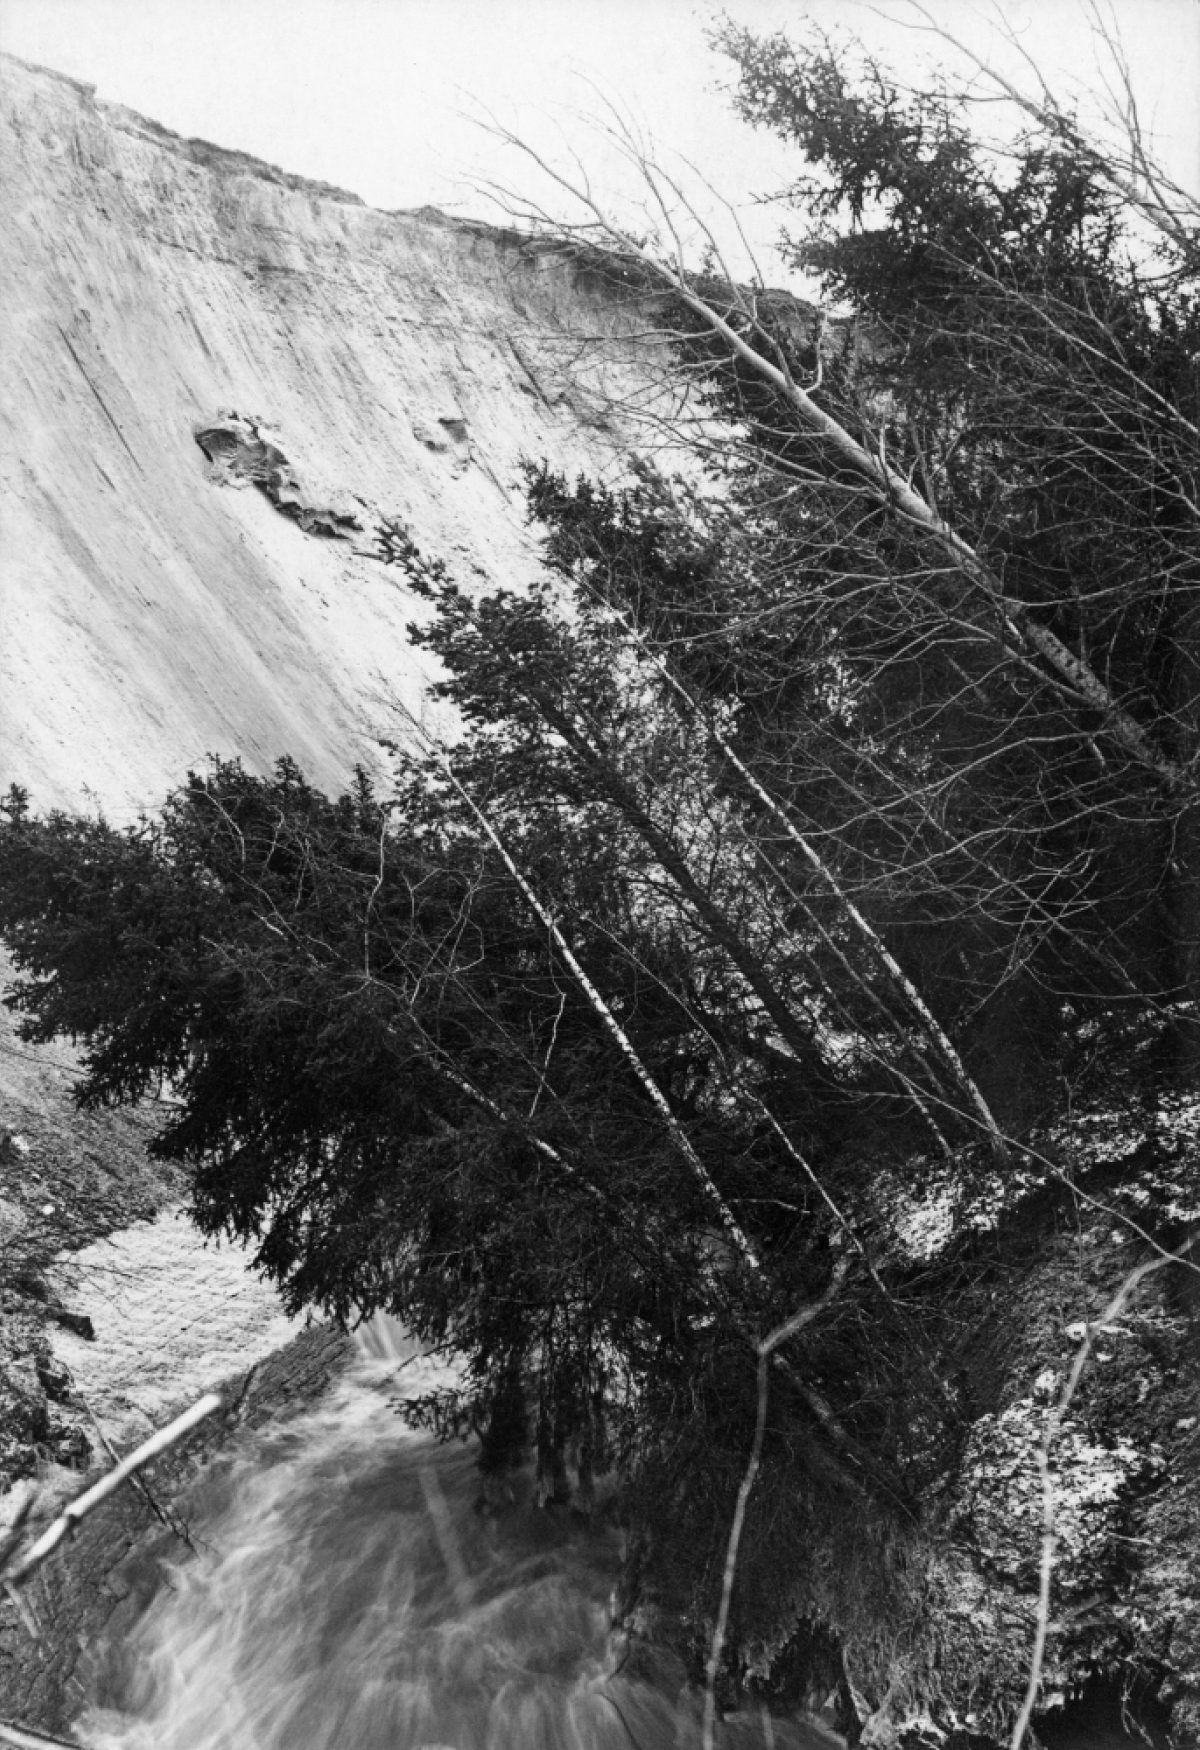 Landslide in Kurikka photographed for Suomen Kuvalehti in 1930. Photo: Aarne Jonasson / Otava / Press Photo Archive JOKA / Finnish Heritage Agency